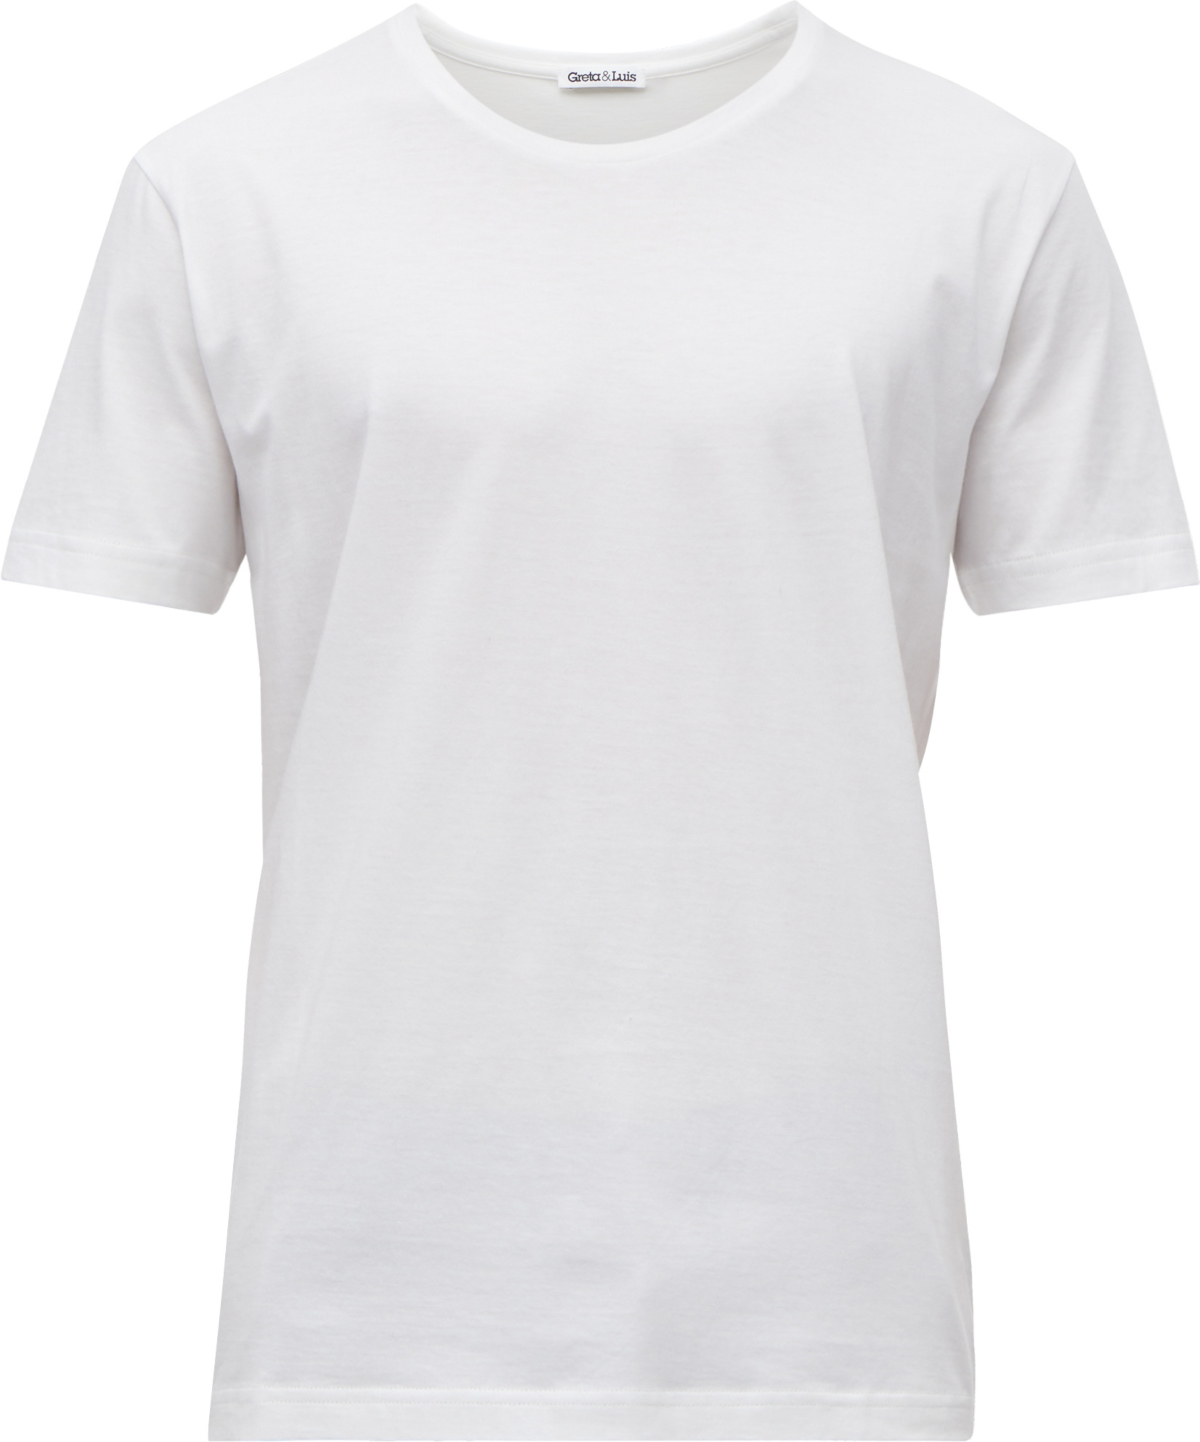 Greta & Luis T-Shirt aus organischer Pima-Baumwolle 439629